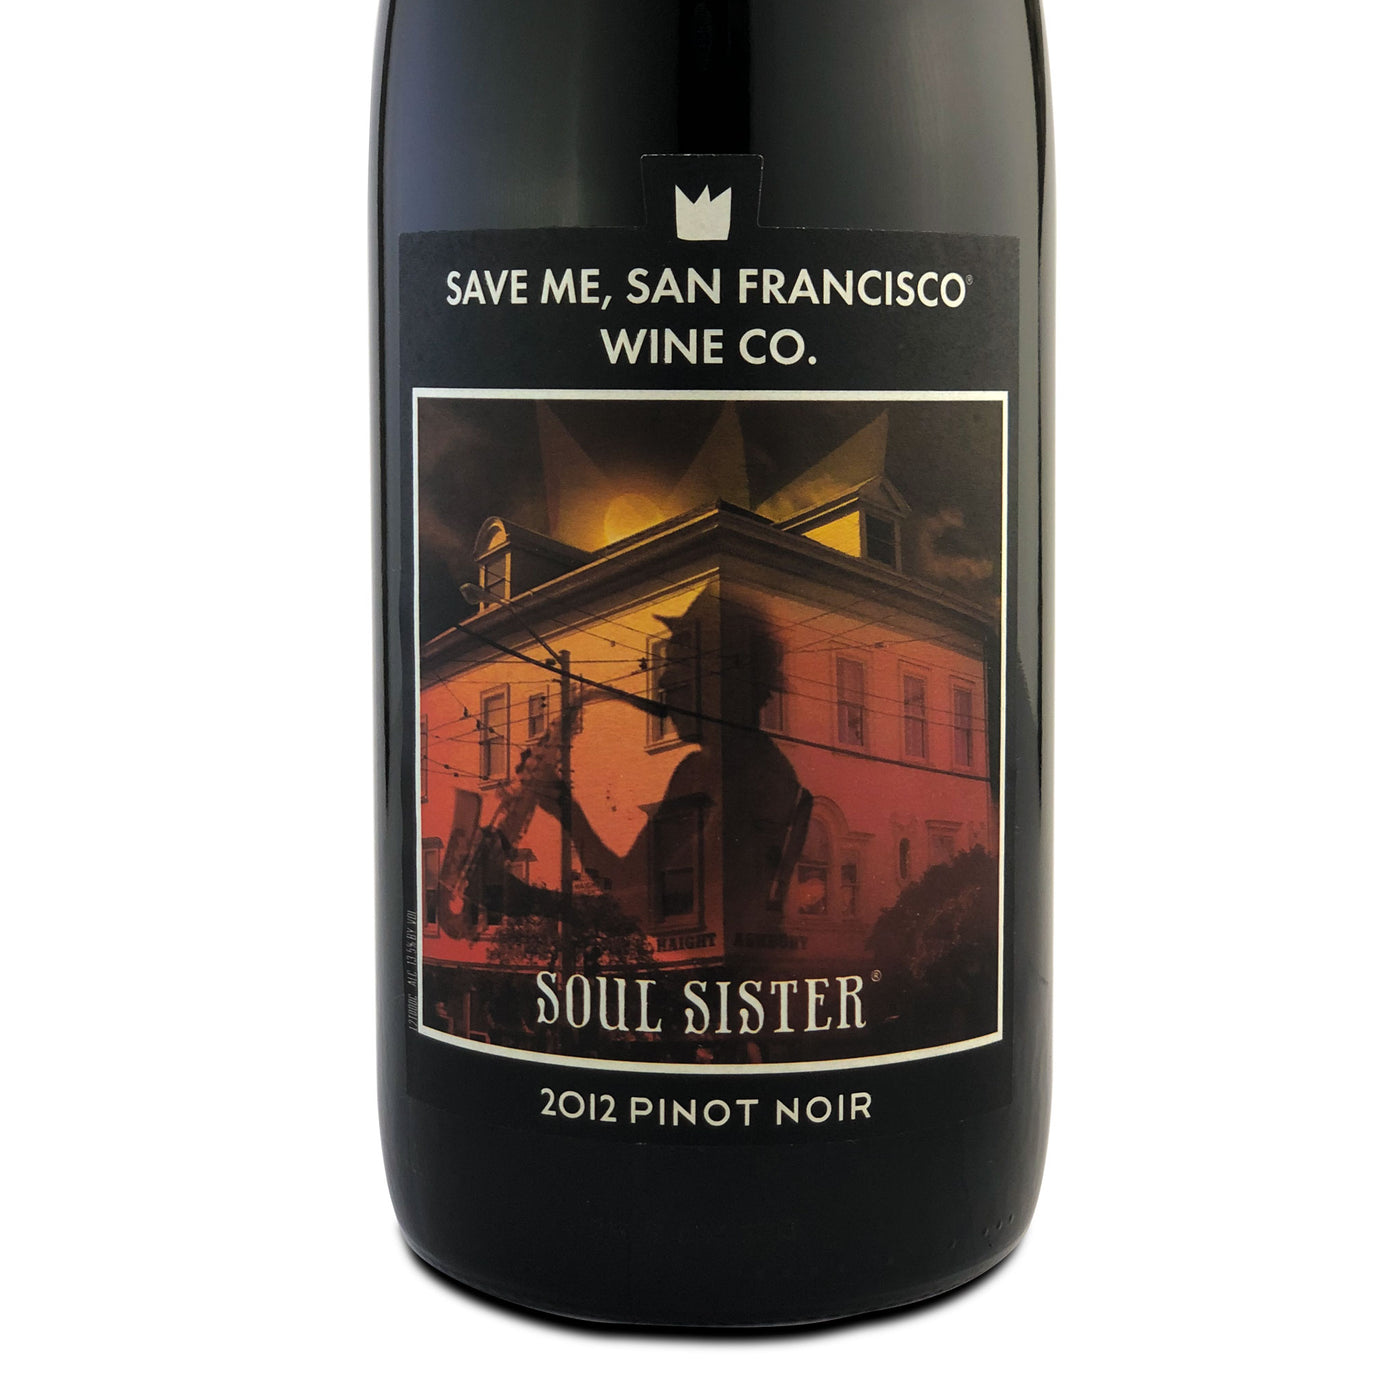 Save Me, San Francisco Soul Sister Pinot Noir 2012